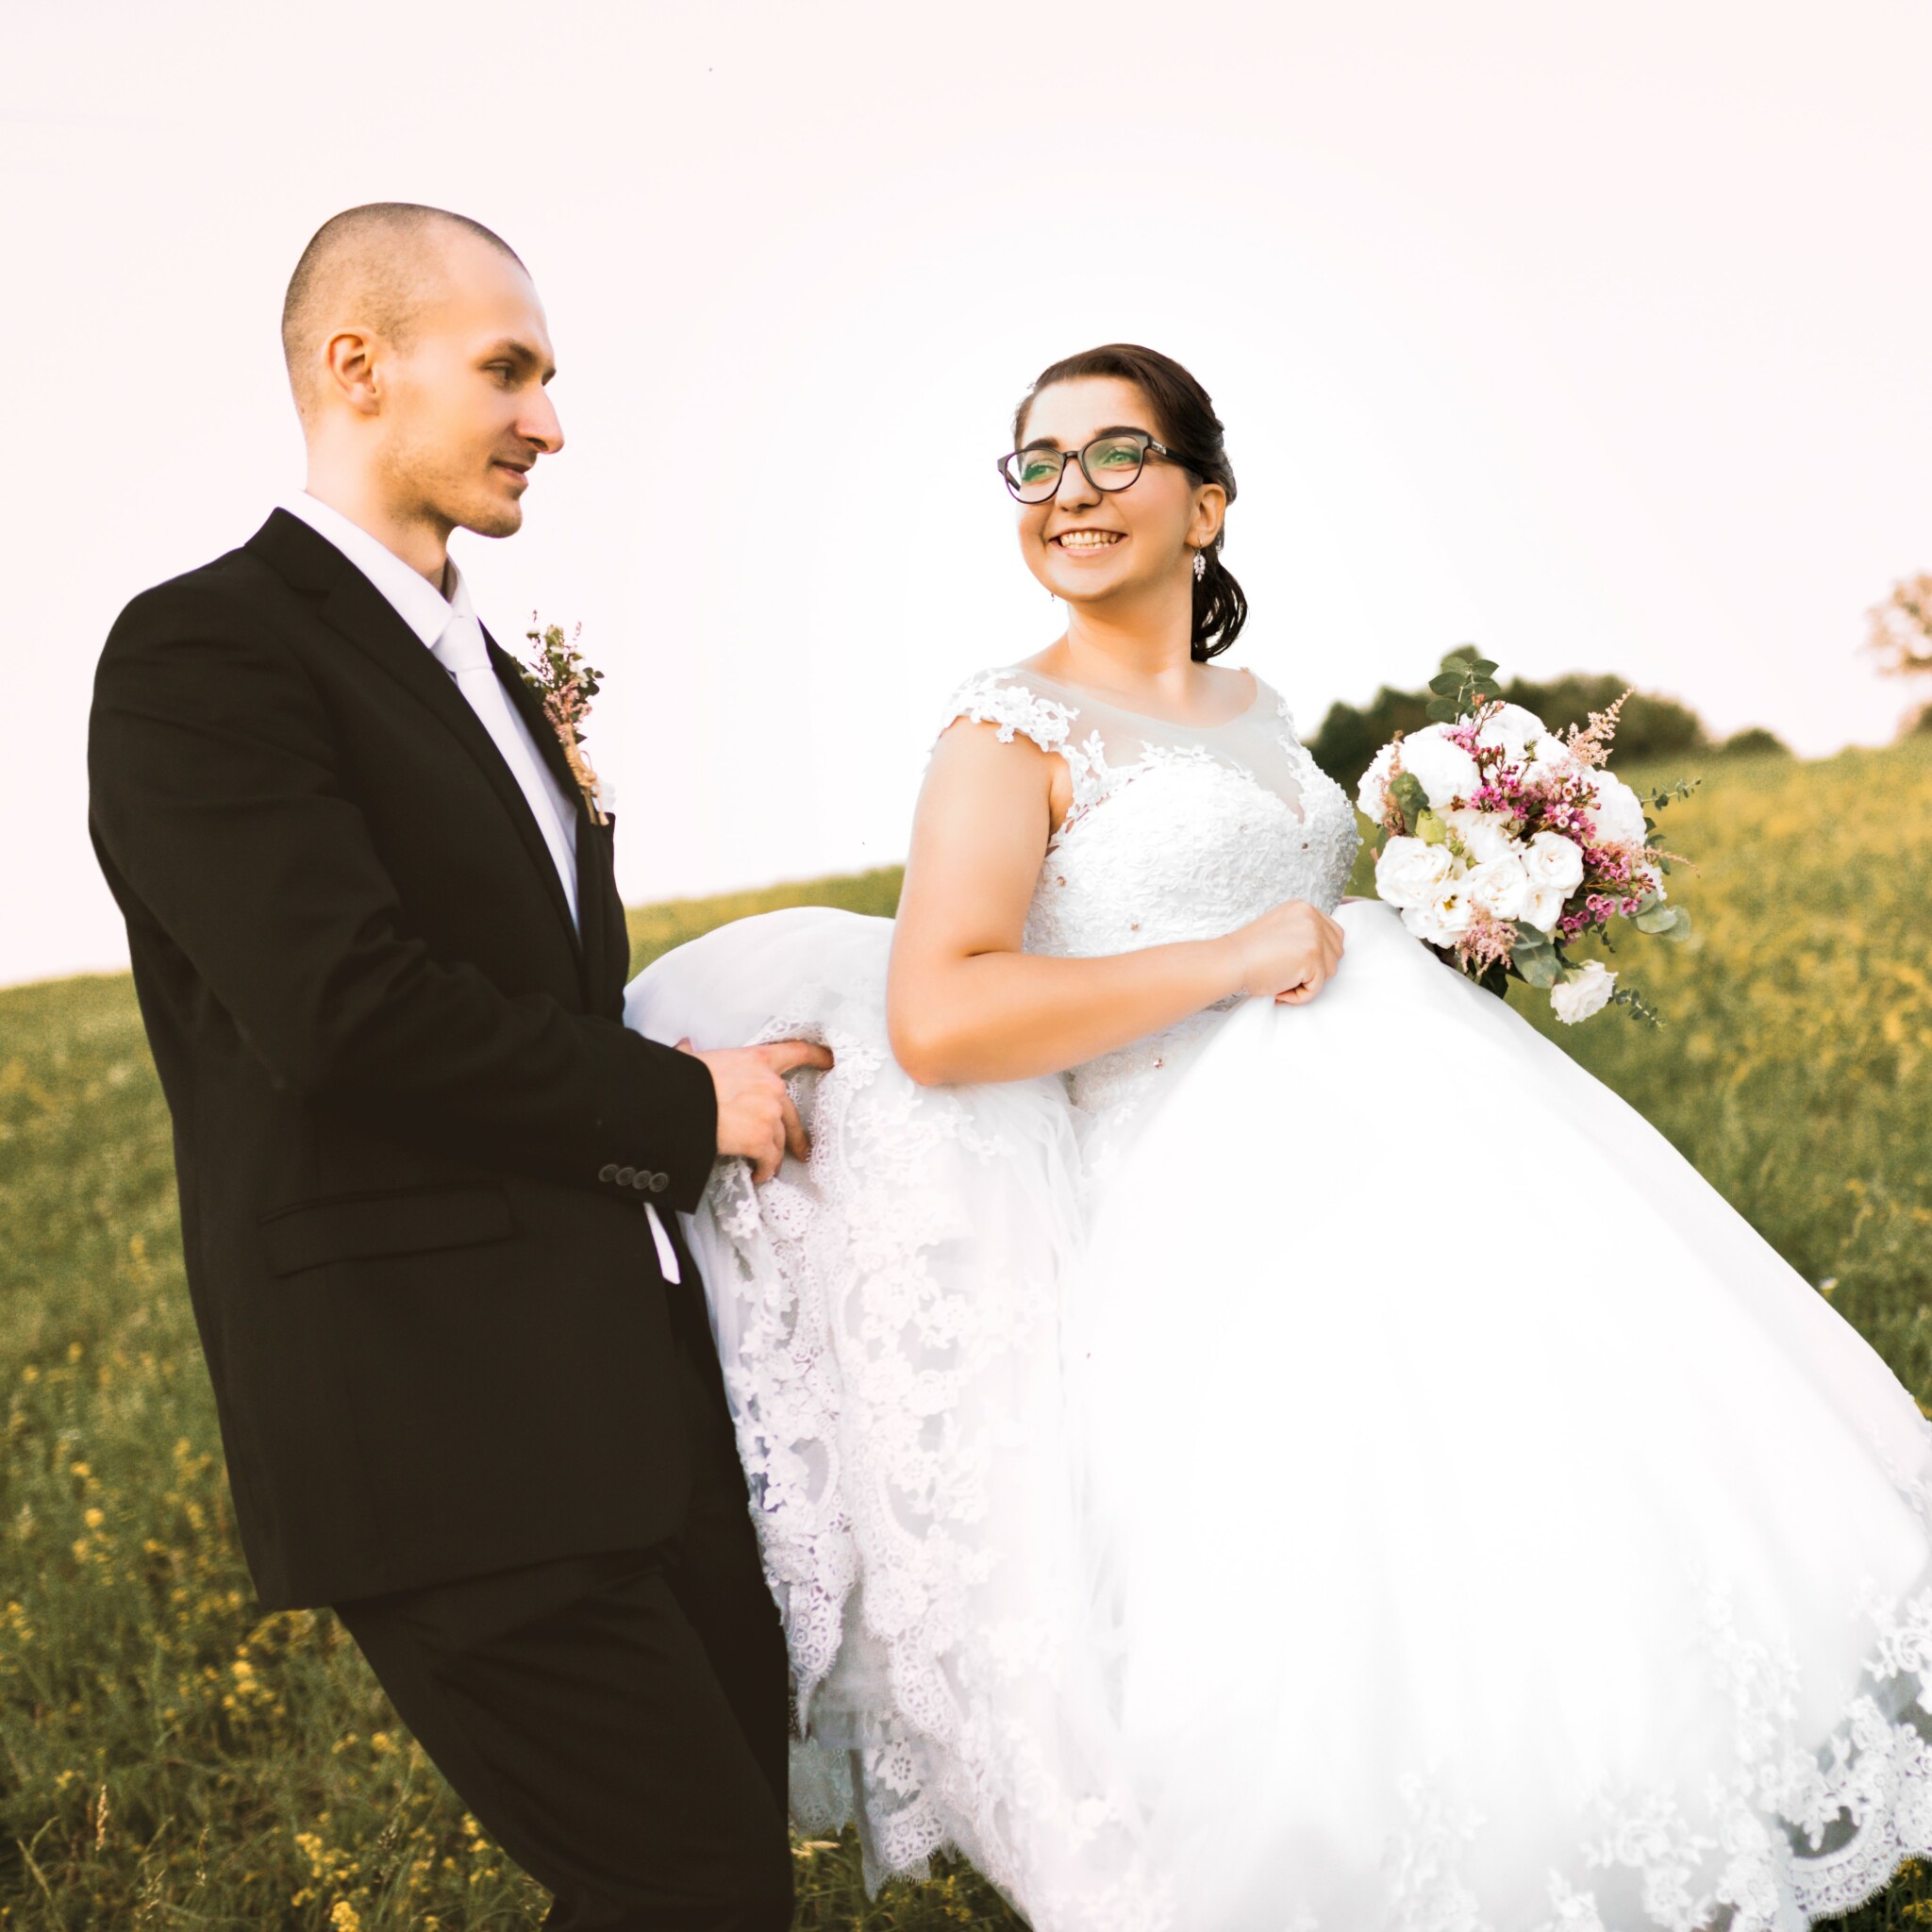 Mini svadobné fotenie Banská Bystrica